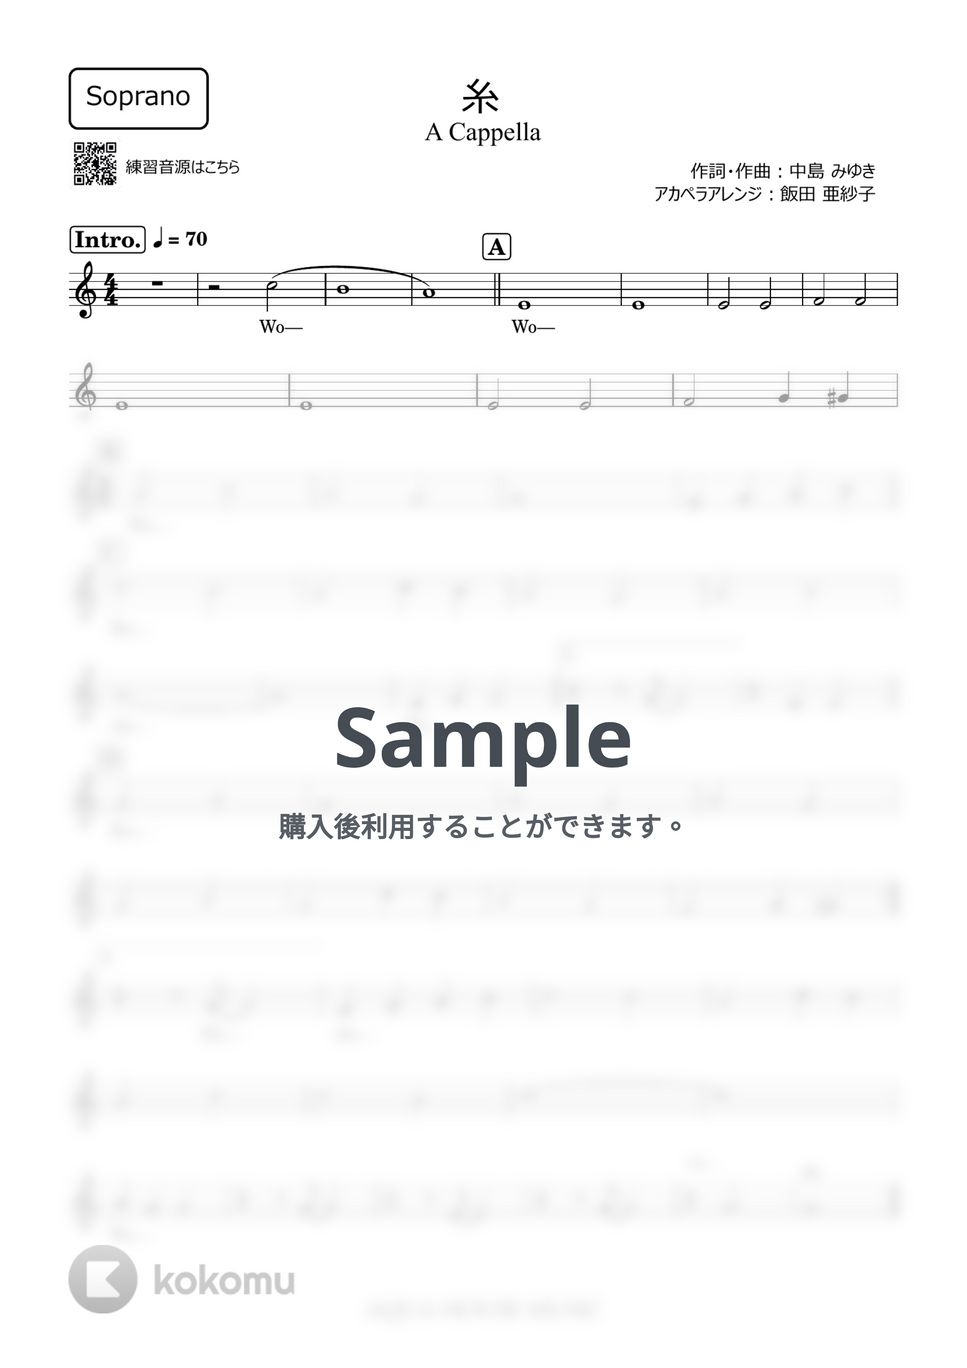 中島みゆき - 糸 (アカペラ楽譜♪Sopranoパート譜) by 飯田 亜紗子